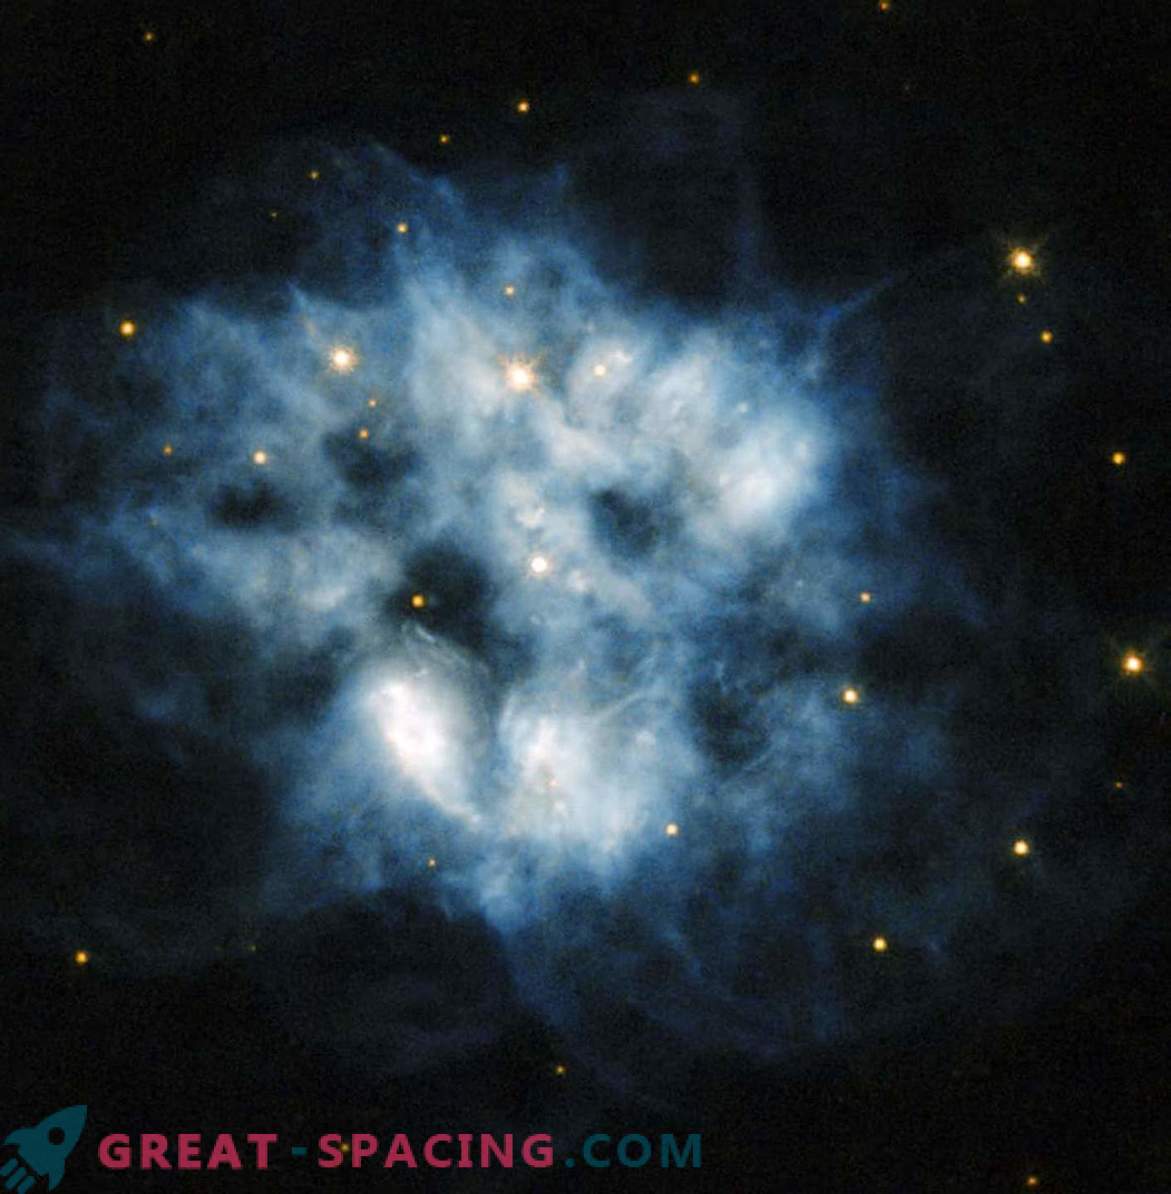 Supernova-Überrest mit starker Wärmestrahlung